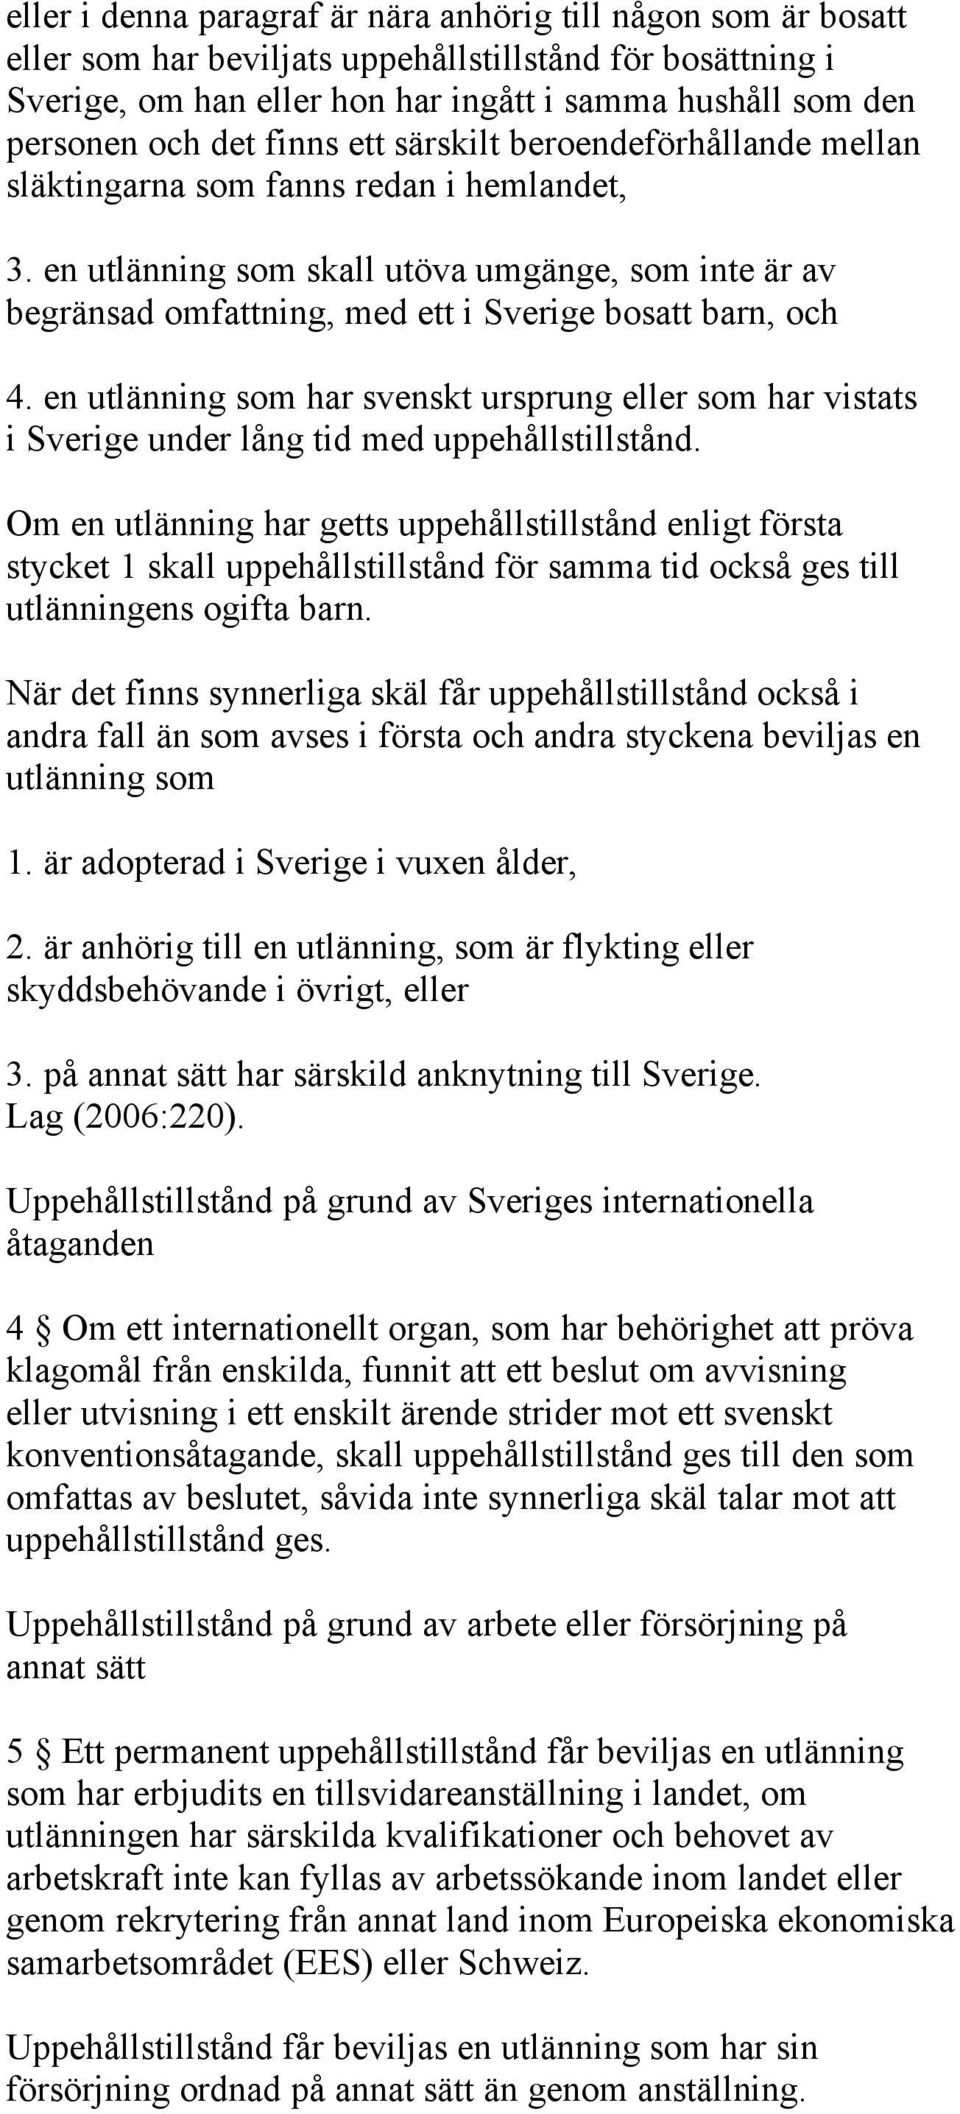 en utlänning som skall utöva umgänge, som inte är av begränsad omfattning, med ett i Sverige bosatt barn, och 4.